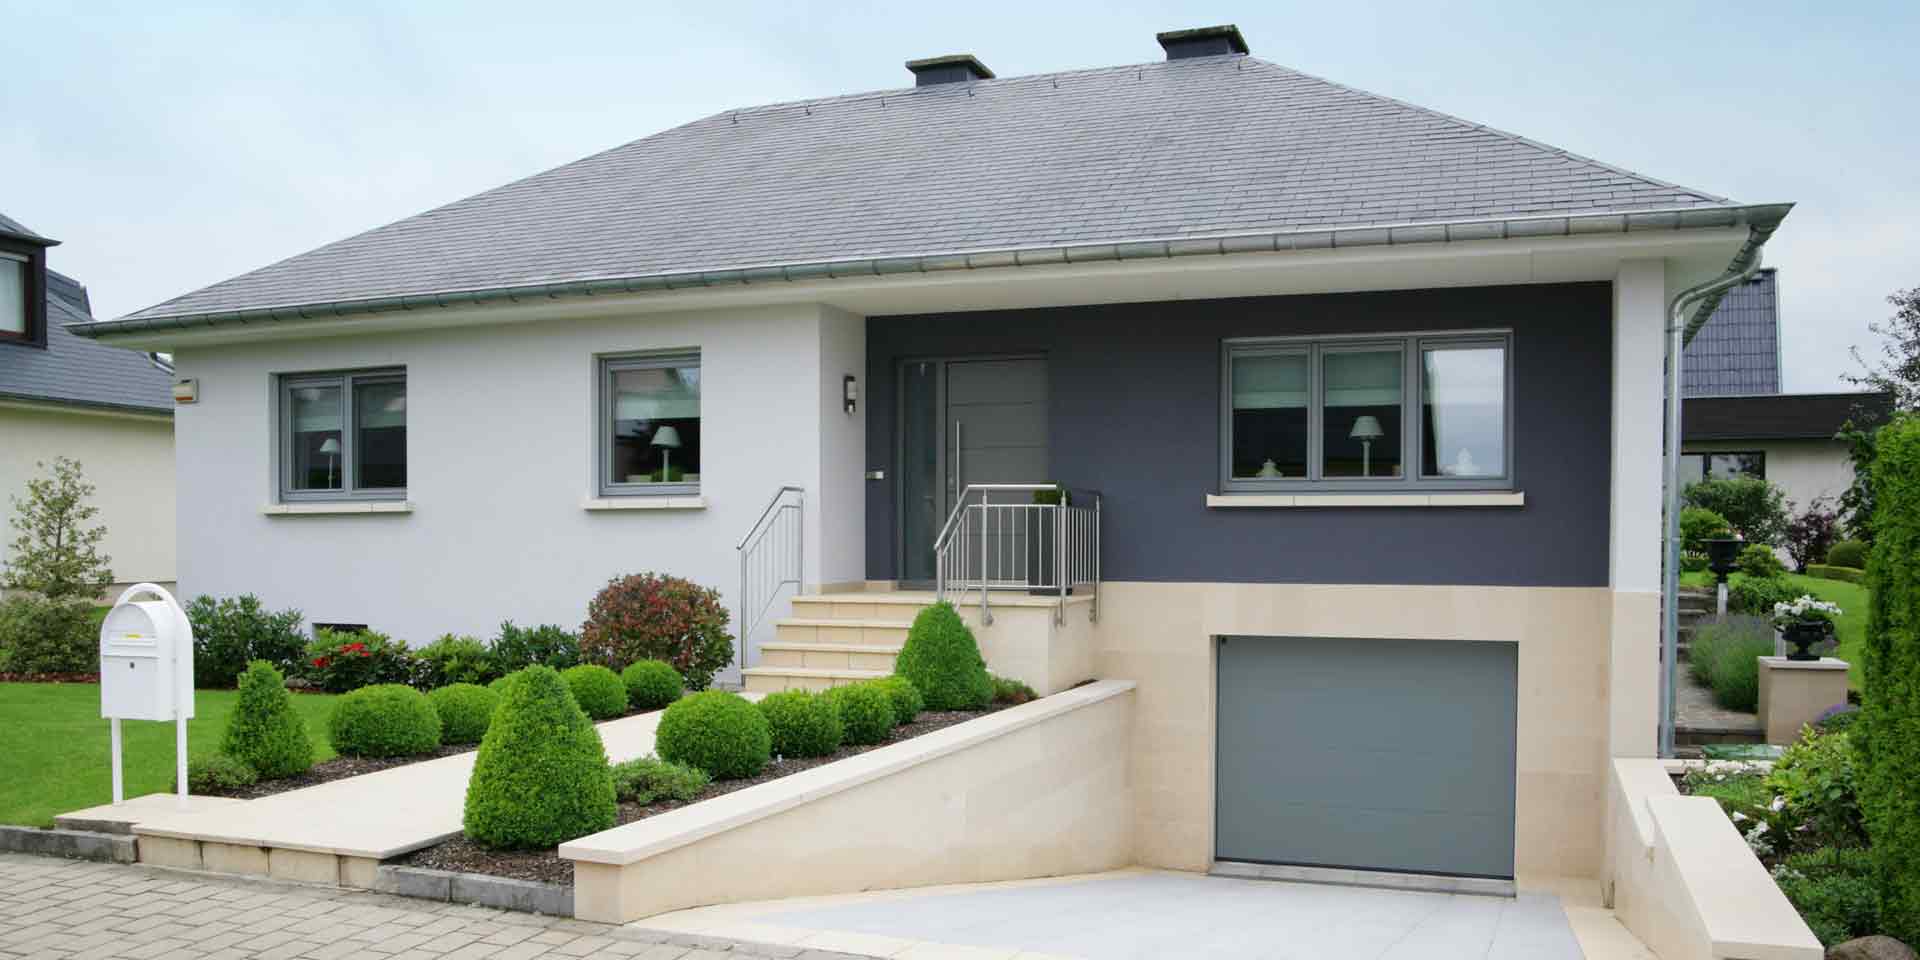 Weiß- graues Einfamilienhaus mit grauer Coplaning Haustür mit Glasseitenteil und grauen Coplaning Alu Jalousiefenster.